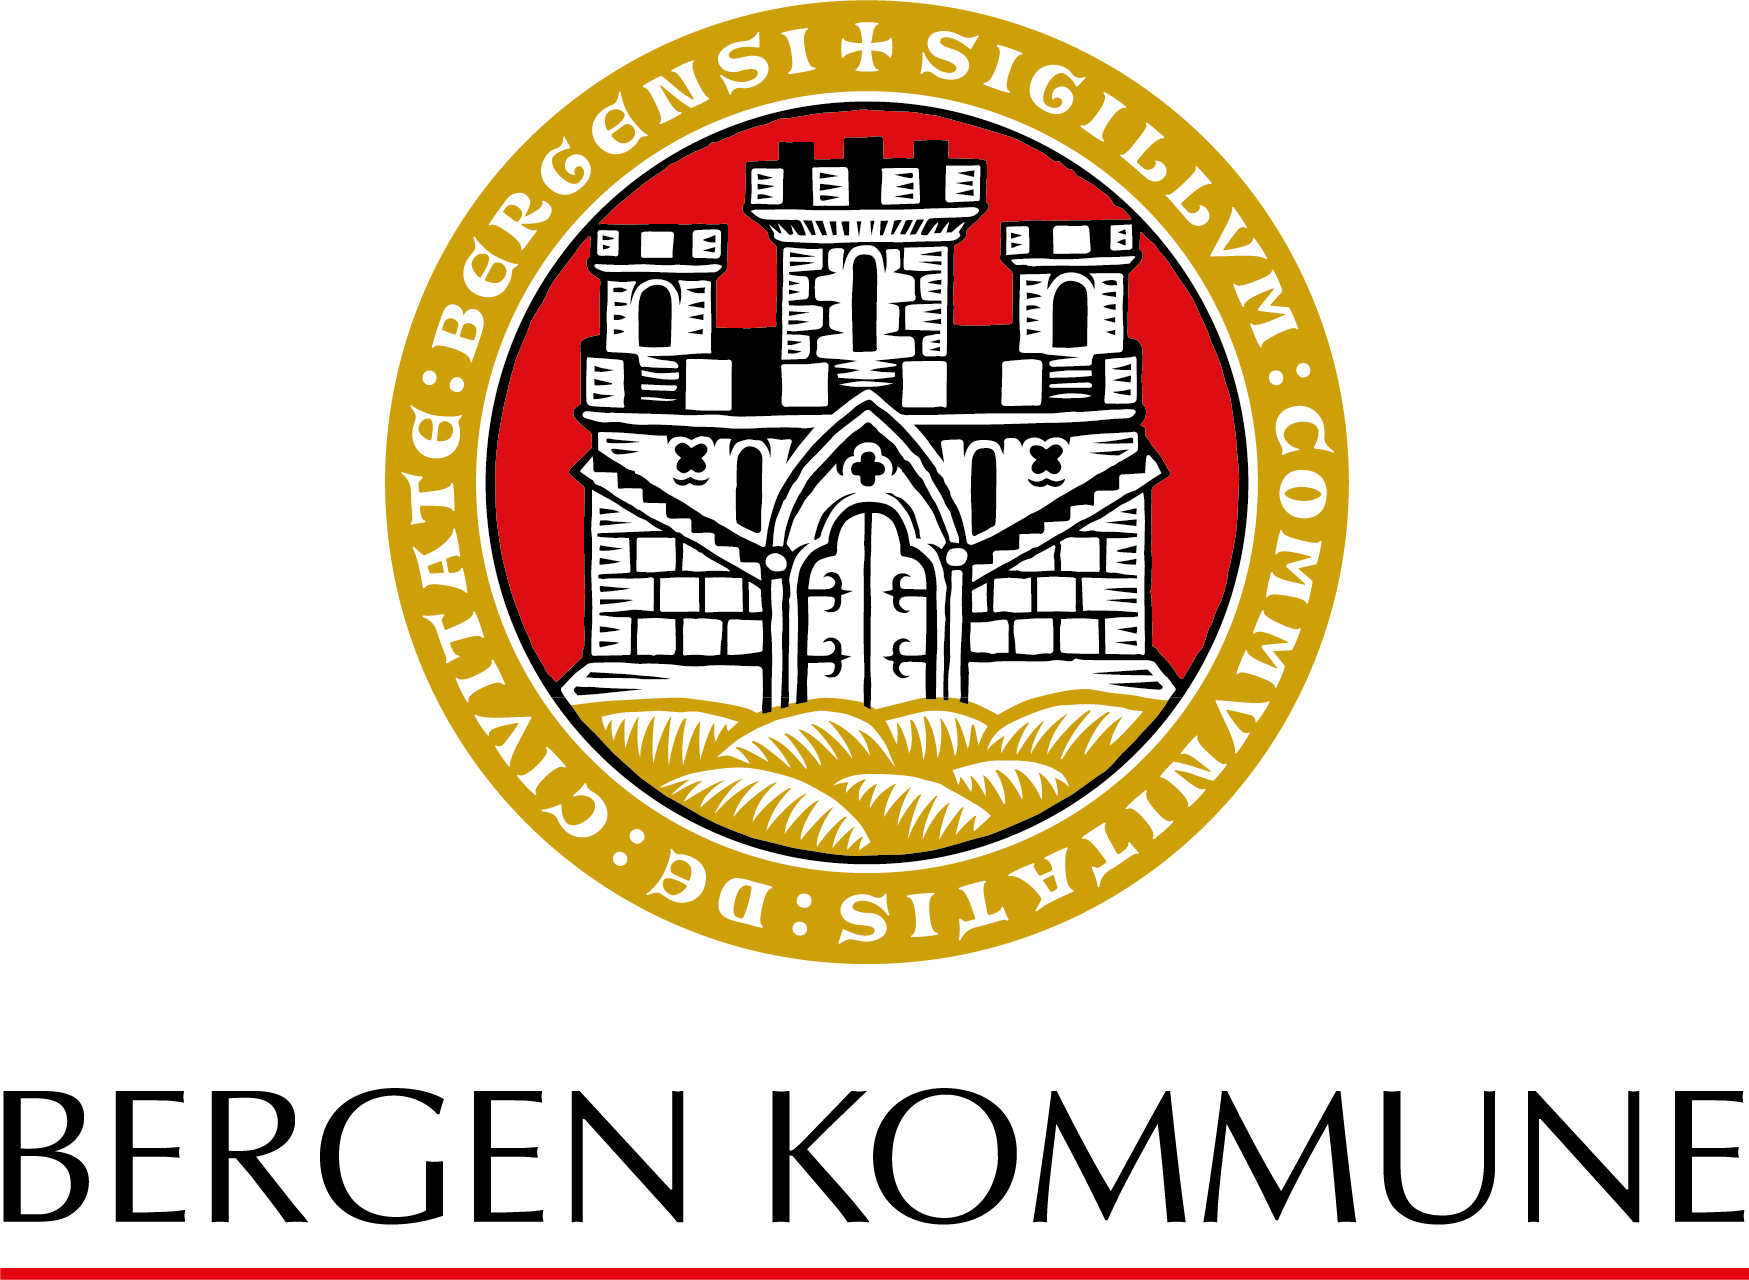 Bergen kommune byvåpen